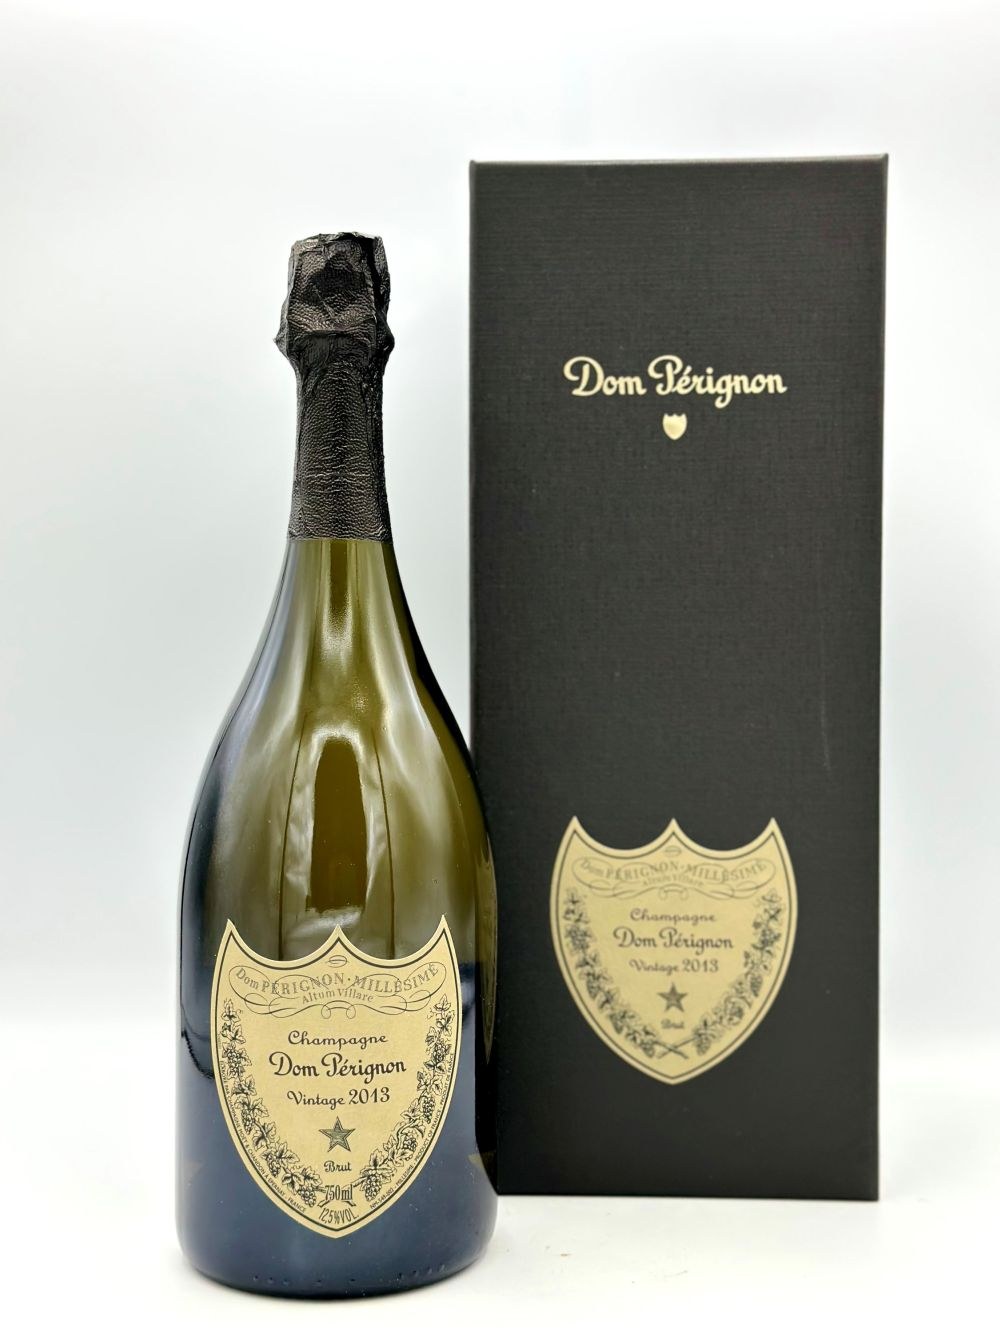 Brut Vintage Online Online - Moët auction Price OneBid et Pérignon Dom - bidding Chandon, - /